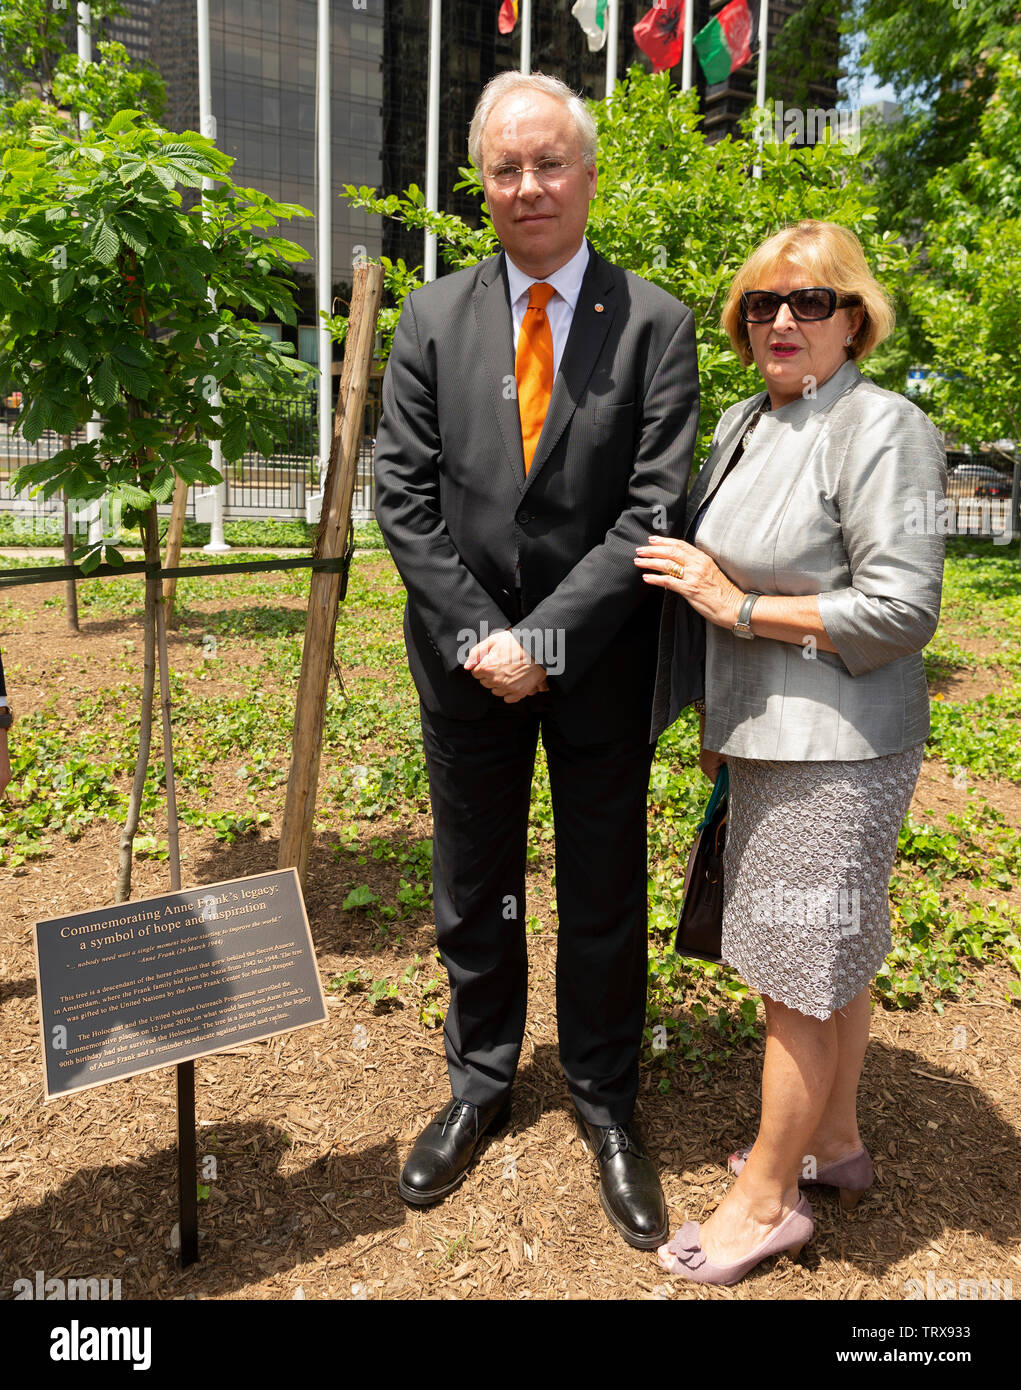 New York, NY - 12 juin 2019 : Karel Jan Gustaaf Van Oosterom & chambres d'assister à la cérémonie de dédicace d'un jeune arbre pour commémorer l'héritage de Anne Frank et les six millions de tués pendant l'Holocauste au Siège de l'ONU Banque D'Images